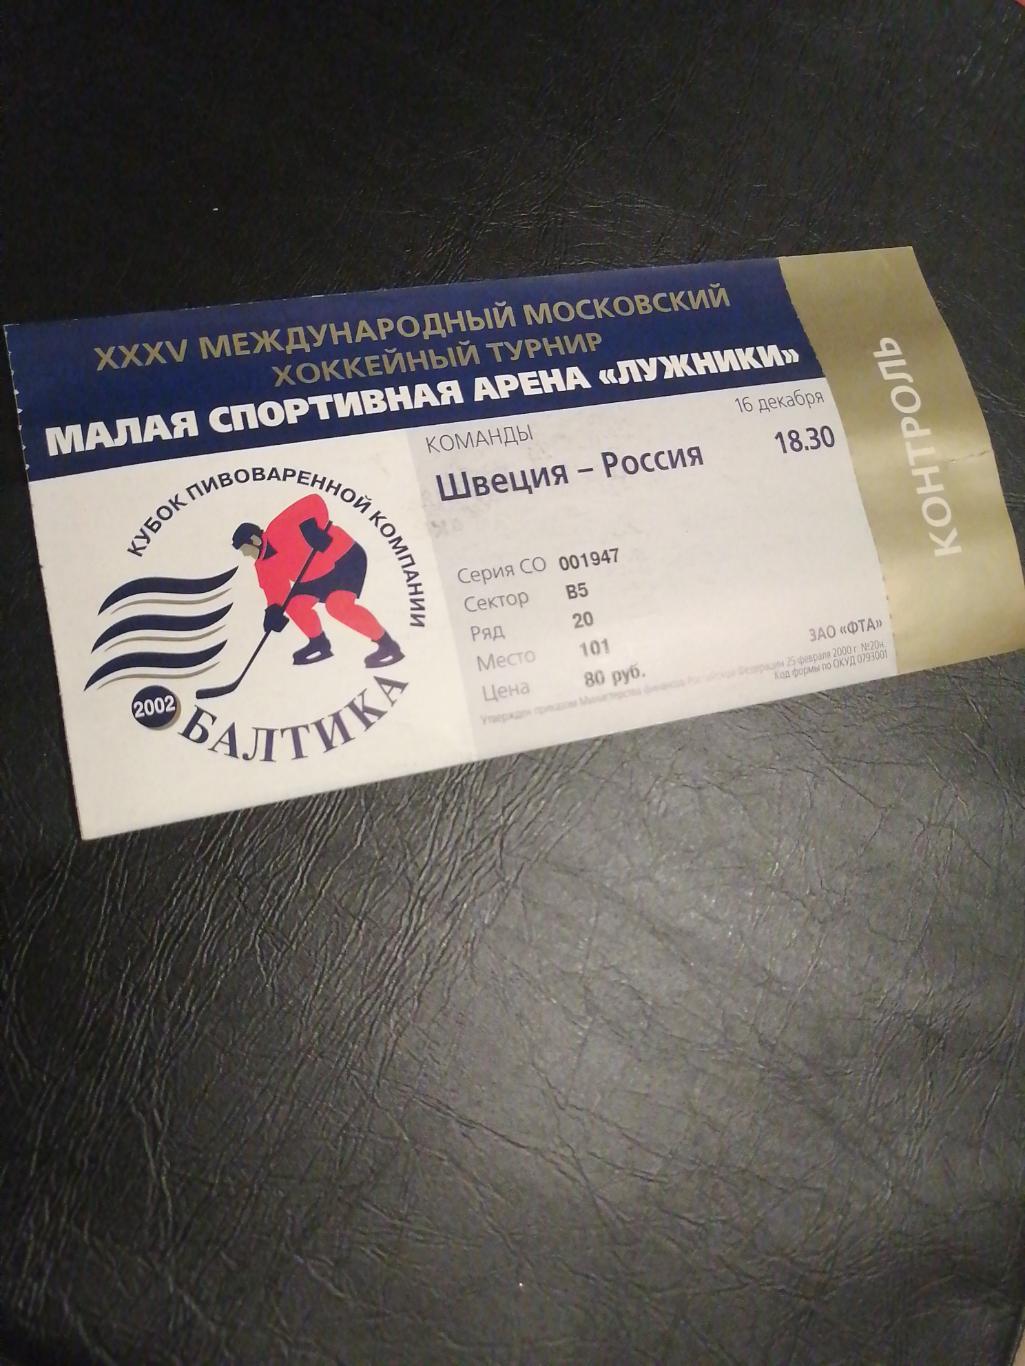 Билет 35й международный московский хоккейный турнир 2002